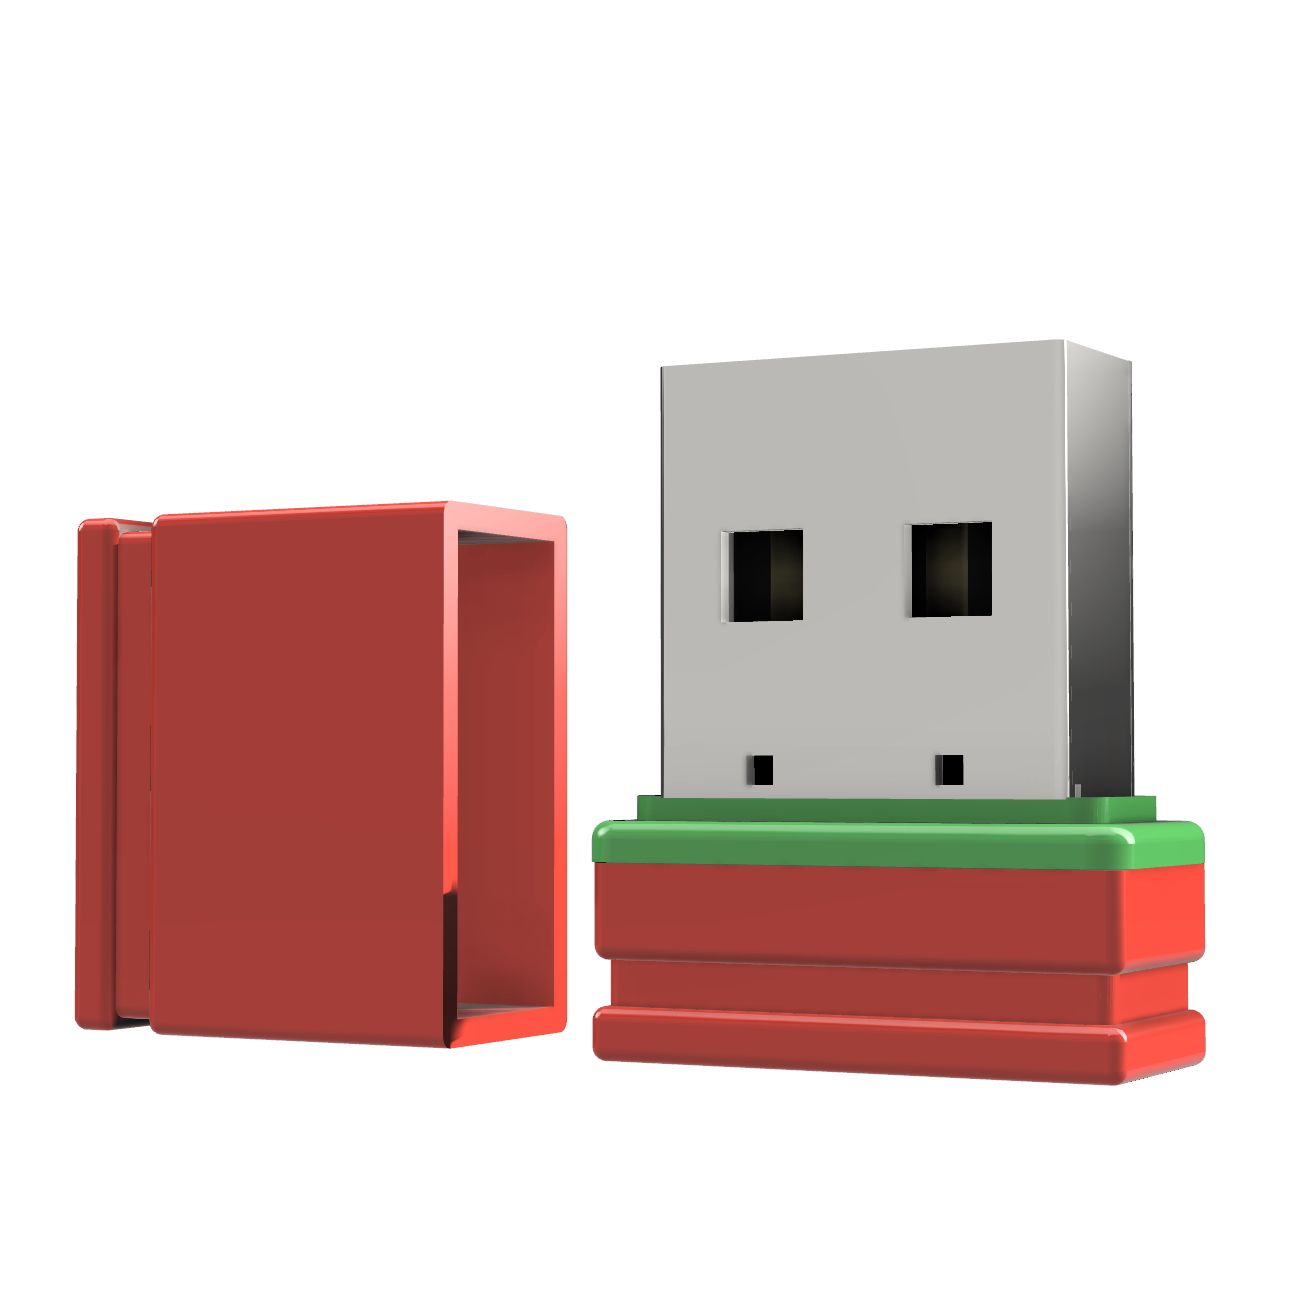 GERMANY (Rot/Grün, USB-Stick GB) 4 P1 ®ULTRA Mini USB